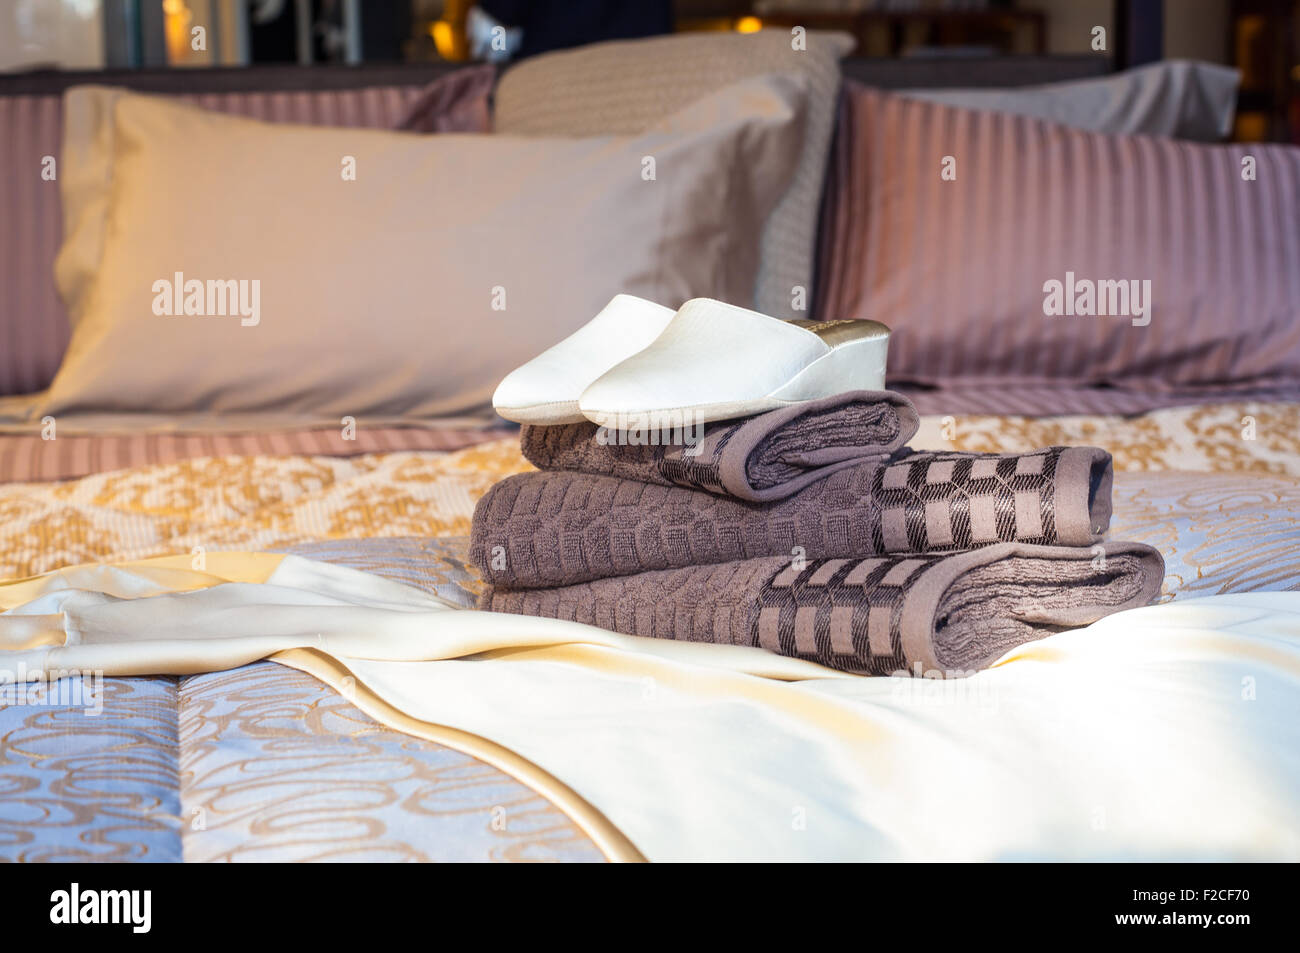 Hembra blanca zapatillas sobre las toallas en la cama Foto de stock